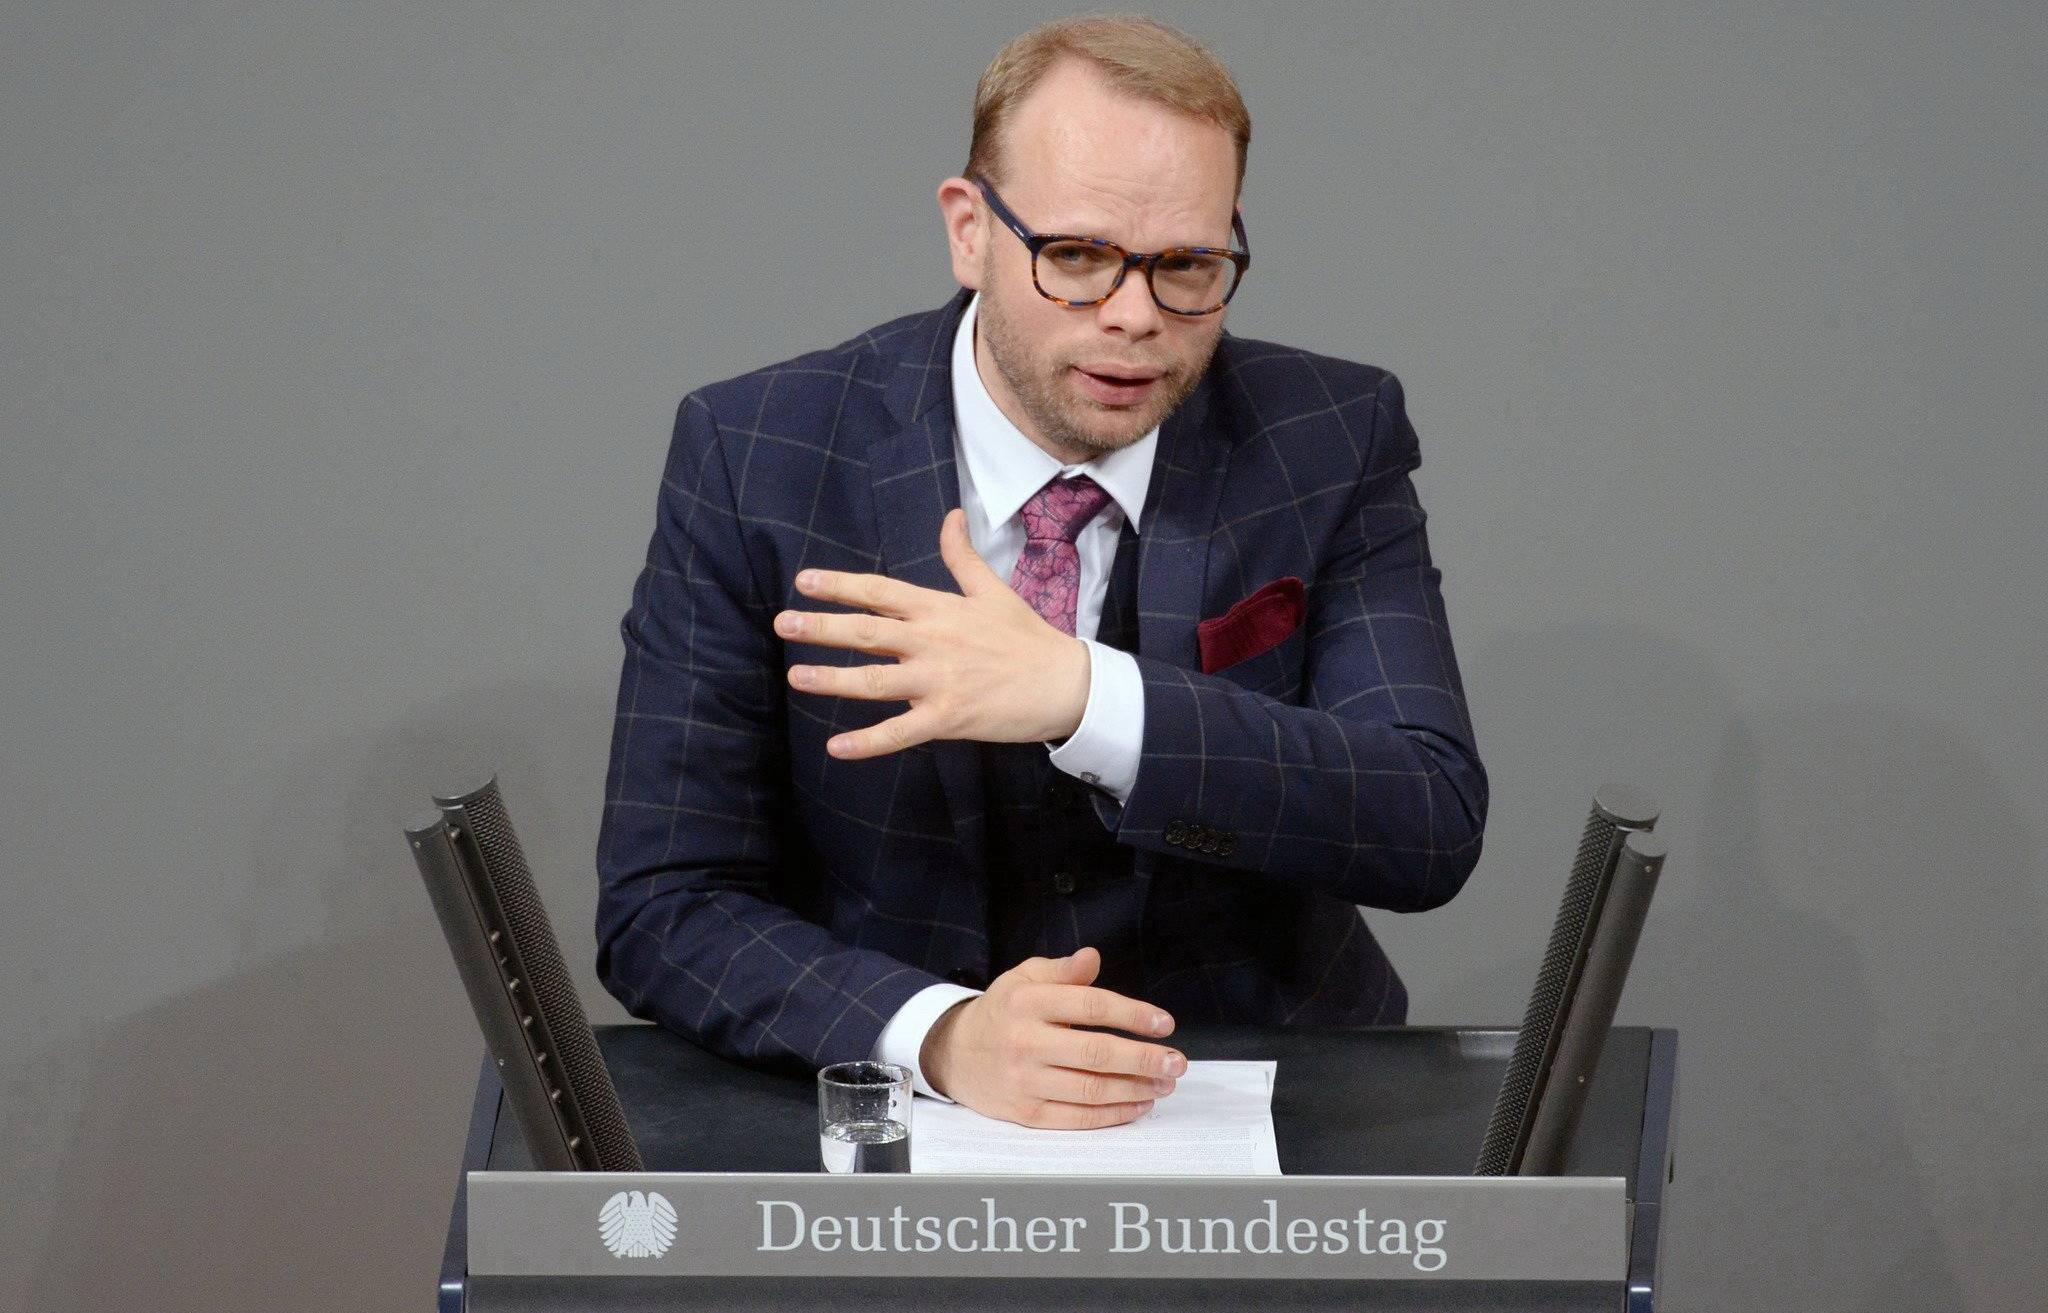  Der Wuppertaler SPD-Abgeordnete Helge Lindh im Bundestag.  